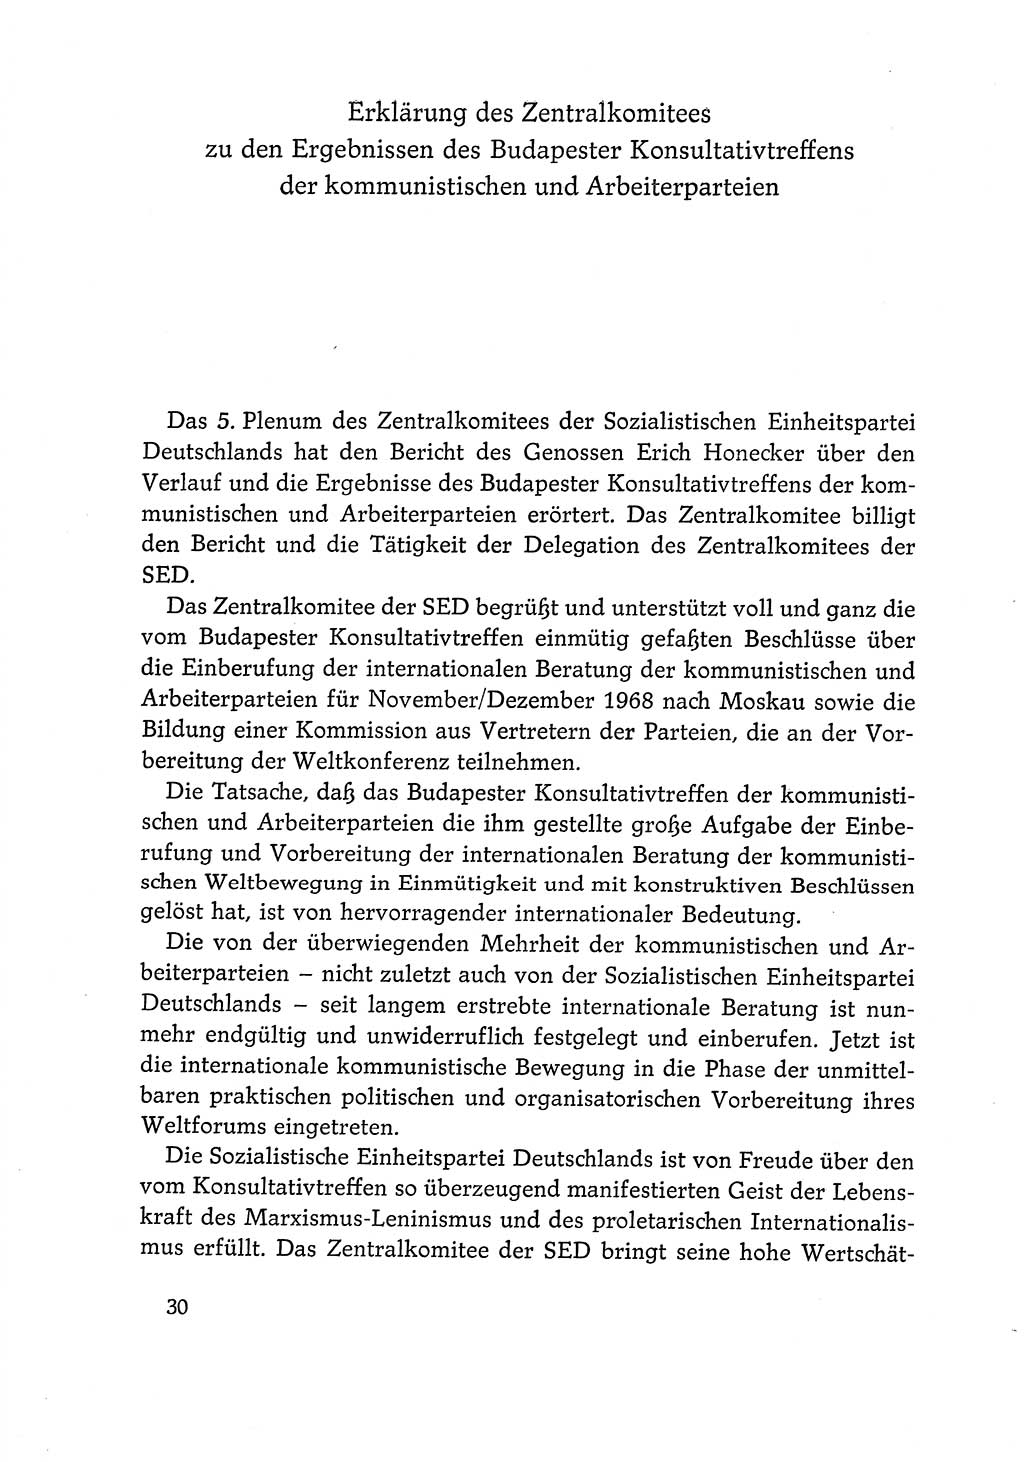 Dokumente der Sozialistischen Einheitspartei Deutschlands (SED) [Deutsche Demokratische Republik (DDR)] 1968-1969, Seite 30 (Dok. SED DDR 1968-1969, S. 30)